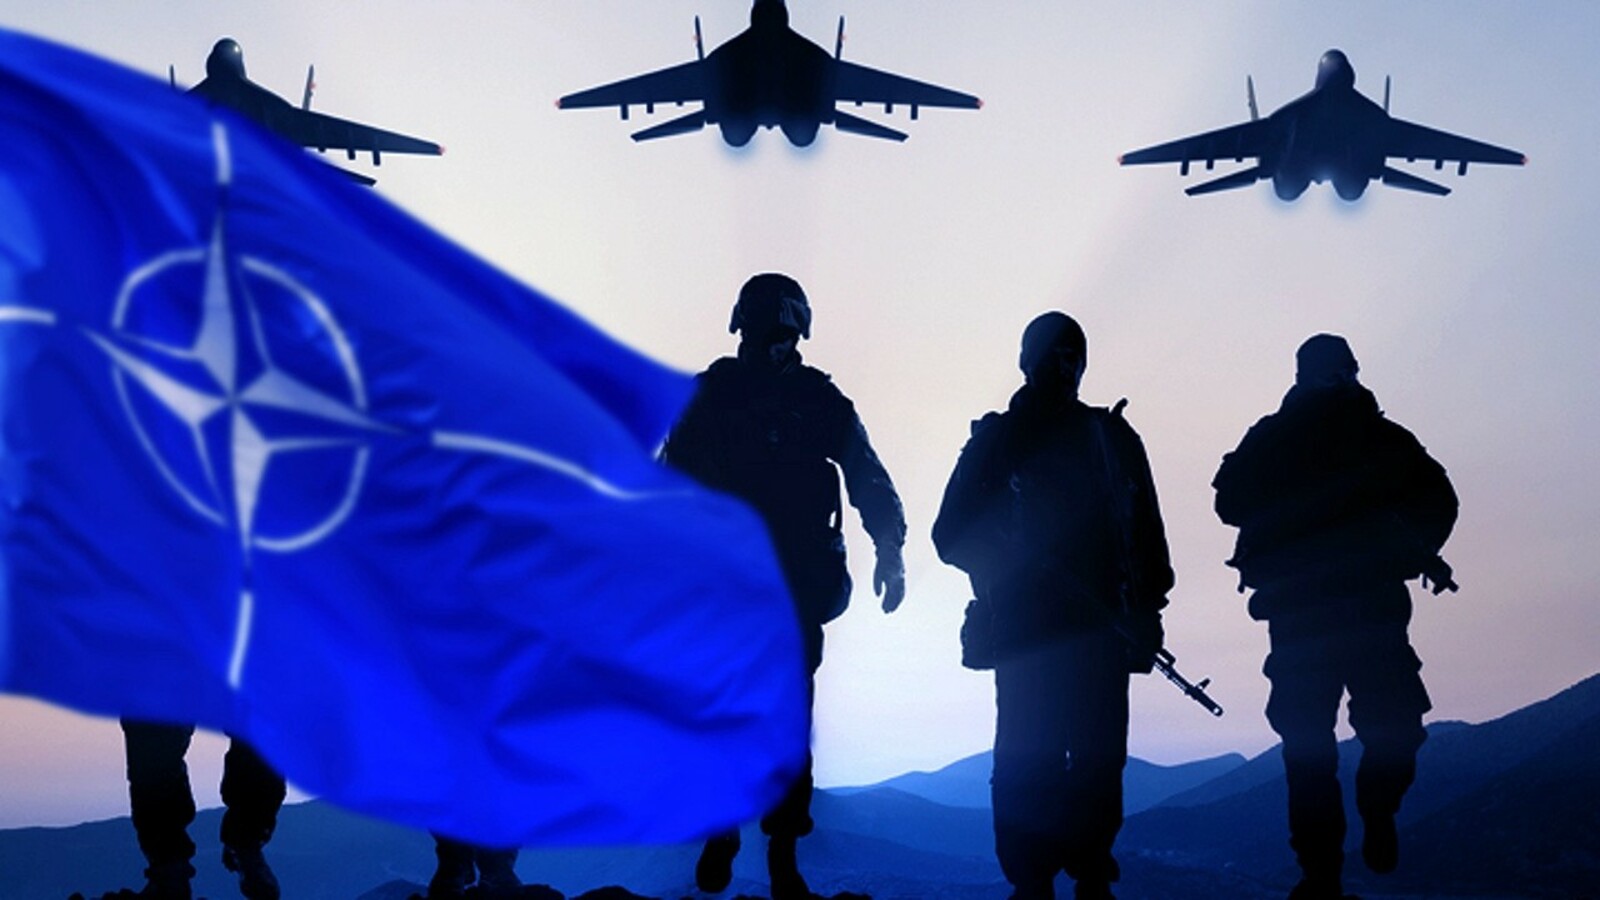 Башҡортостан эксперты: НАТО-ның маҡсаты – Рәсәйгә ҡаршы хәрби операцияларға әҙерләнеү